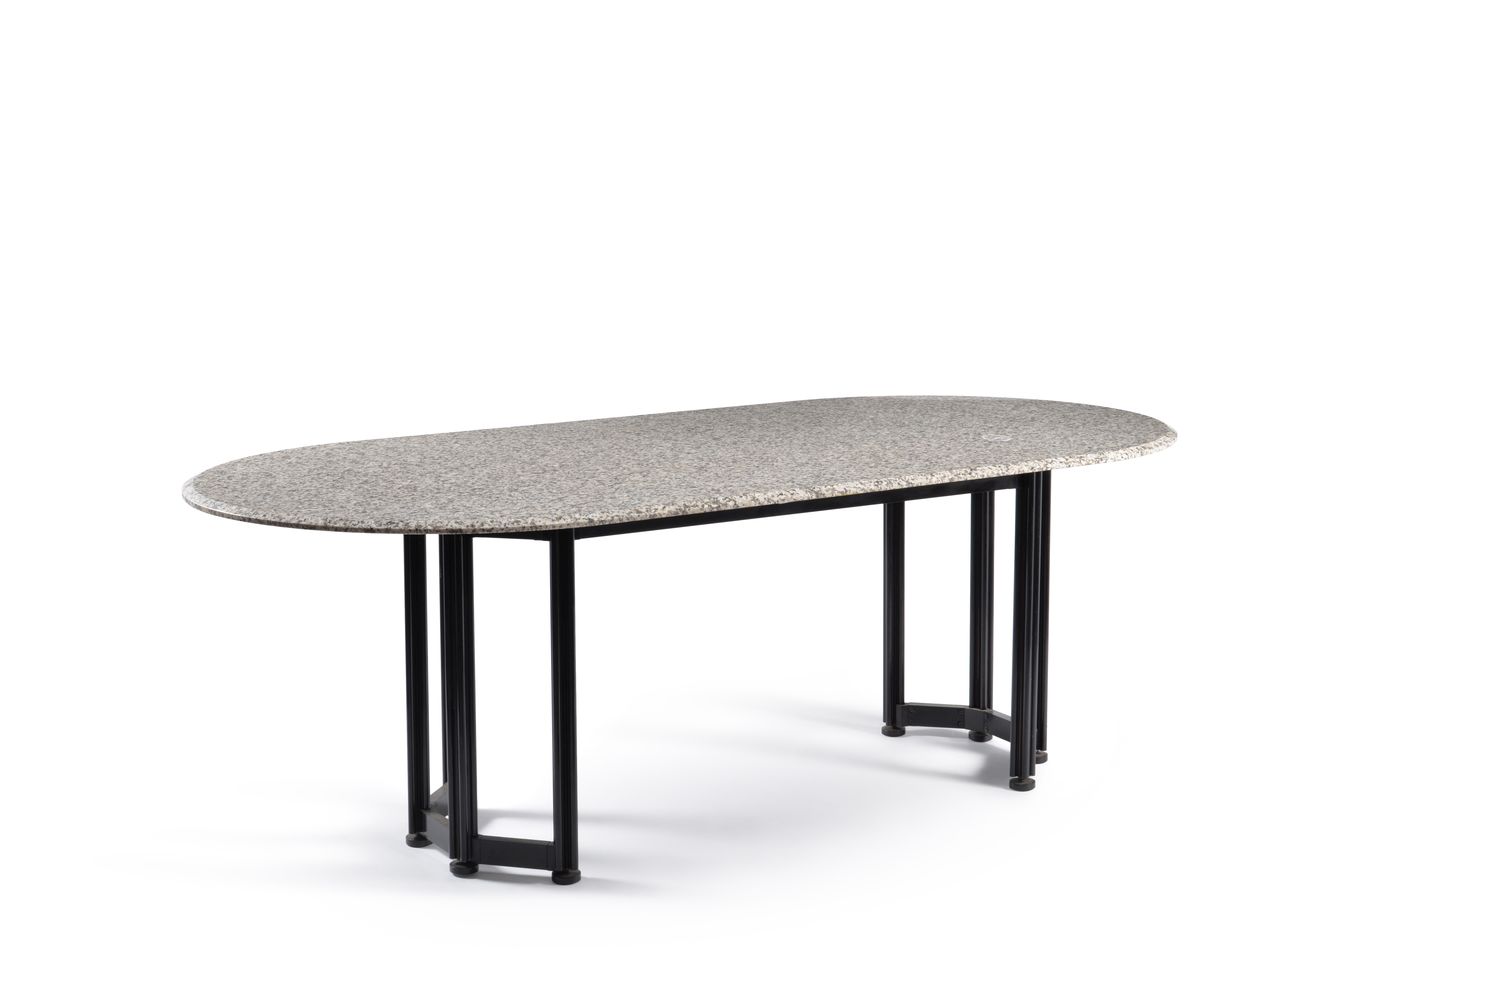 Italian design, an oval dining table